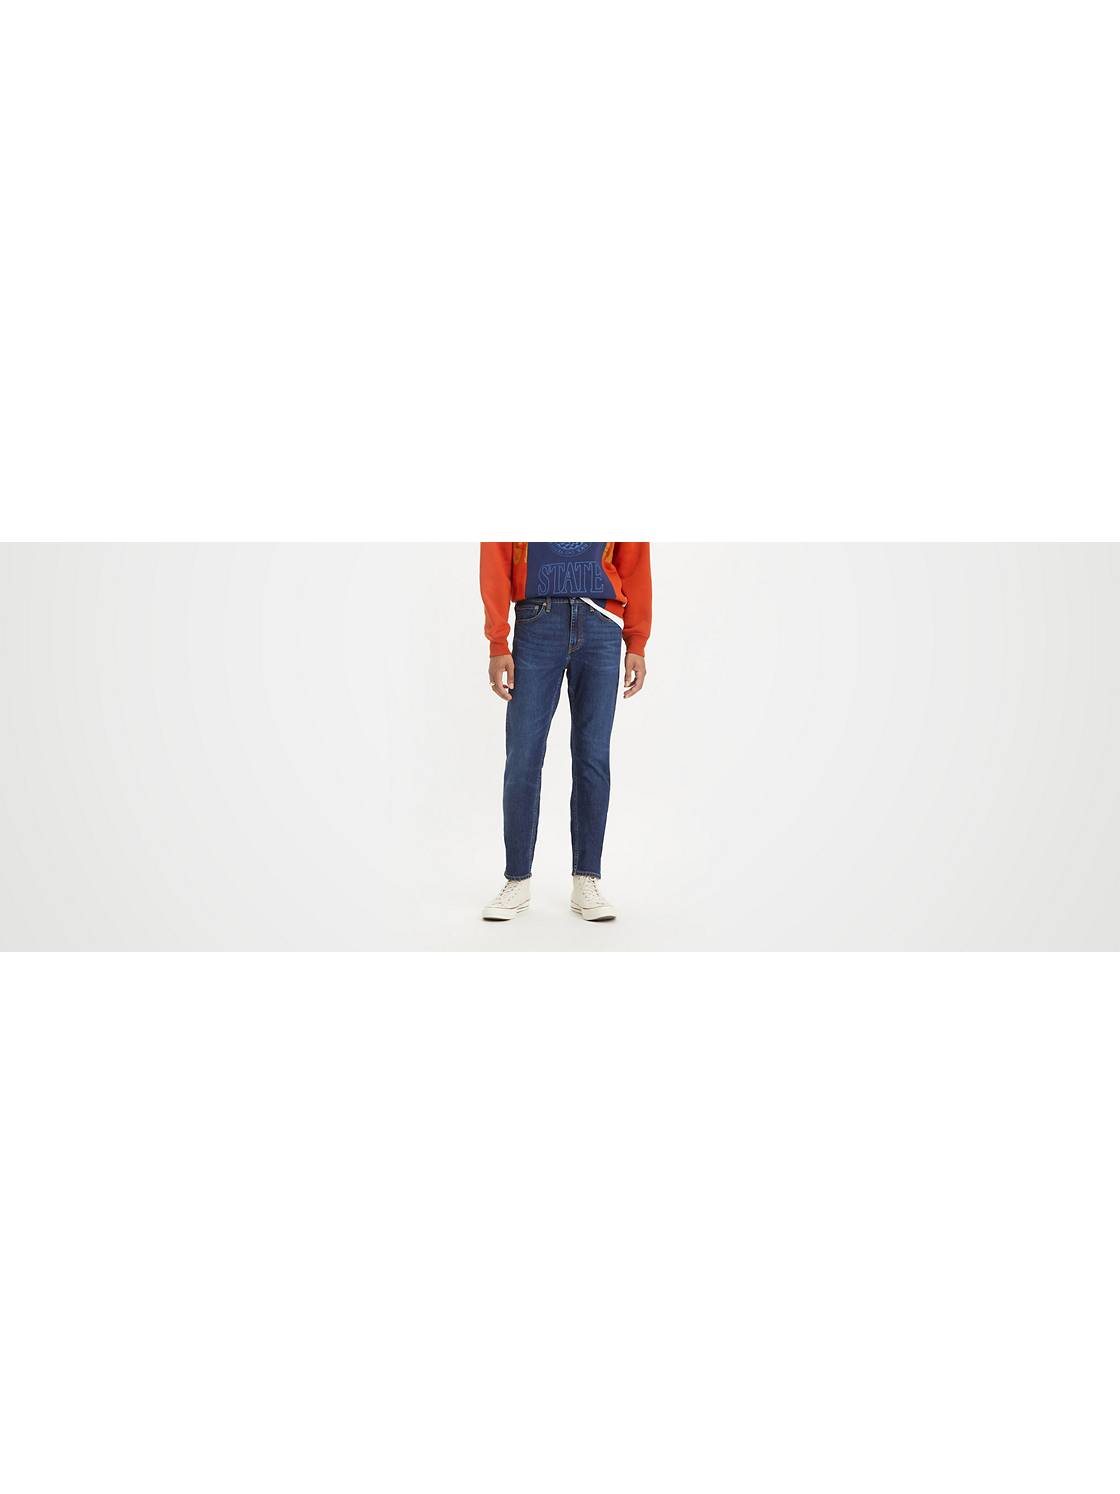 Sleek & Trim: Men's Slim Fit Jeans